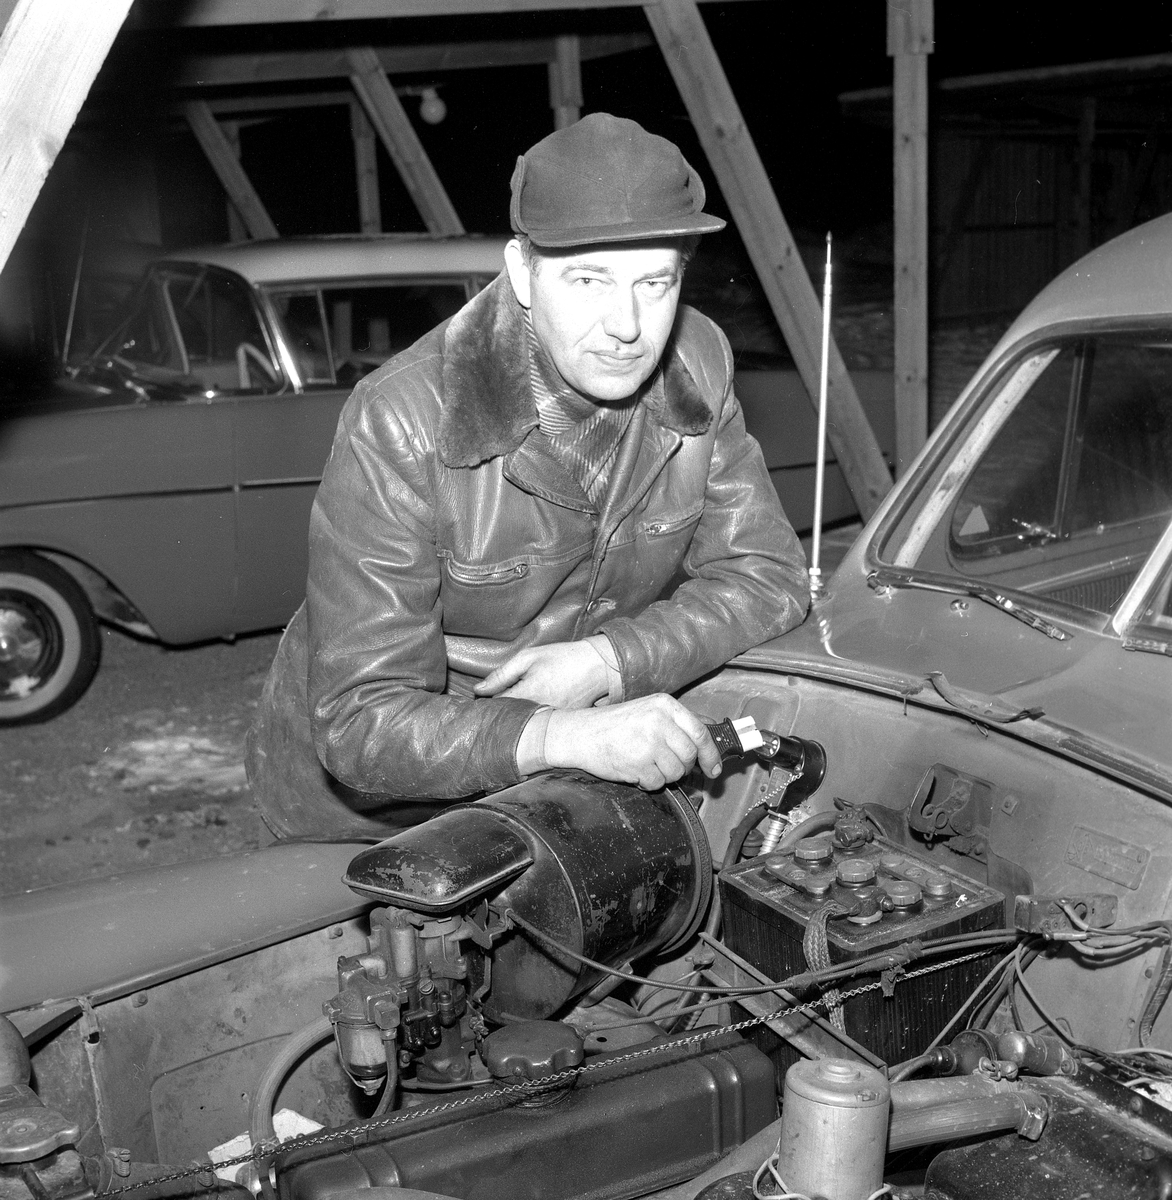 Garage i Rosta.
15 januari 1959. 
En bil av märket Volvo PV444.